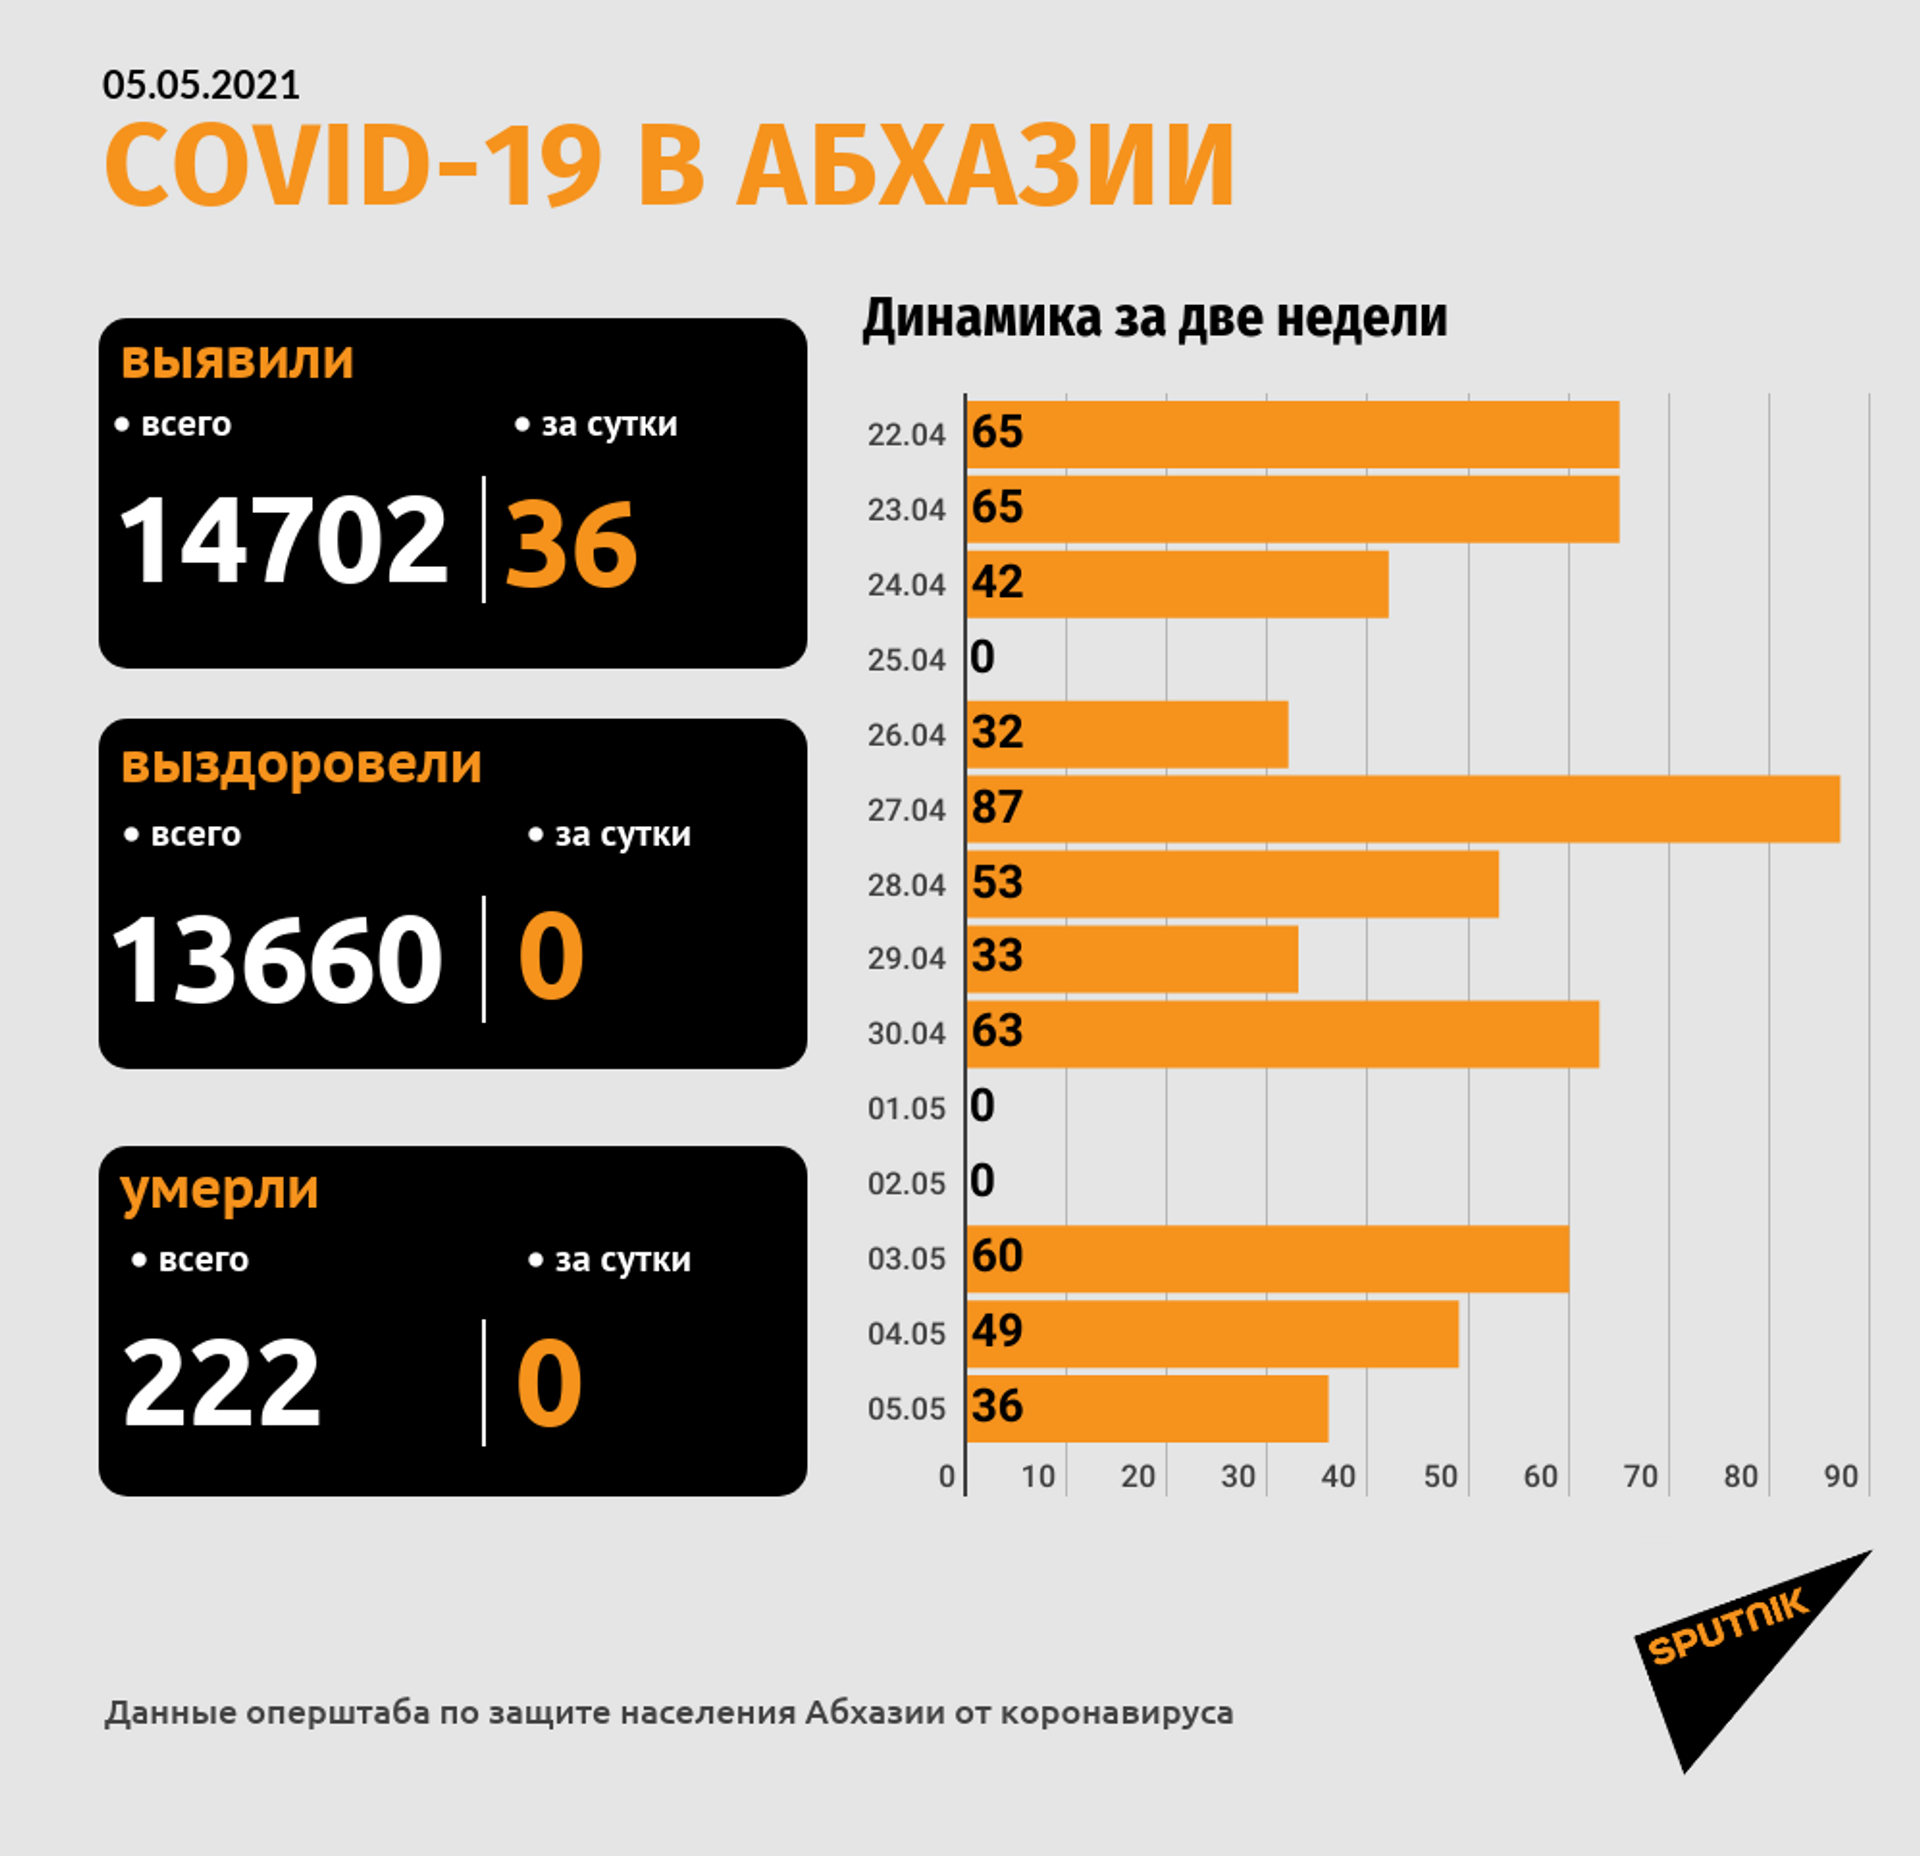 Диагноз COVID-19 подтвержден у 36 человек за сутки в Абхазии - Sputnik Абхазия, 1920, 05.05.2021